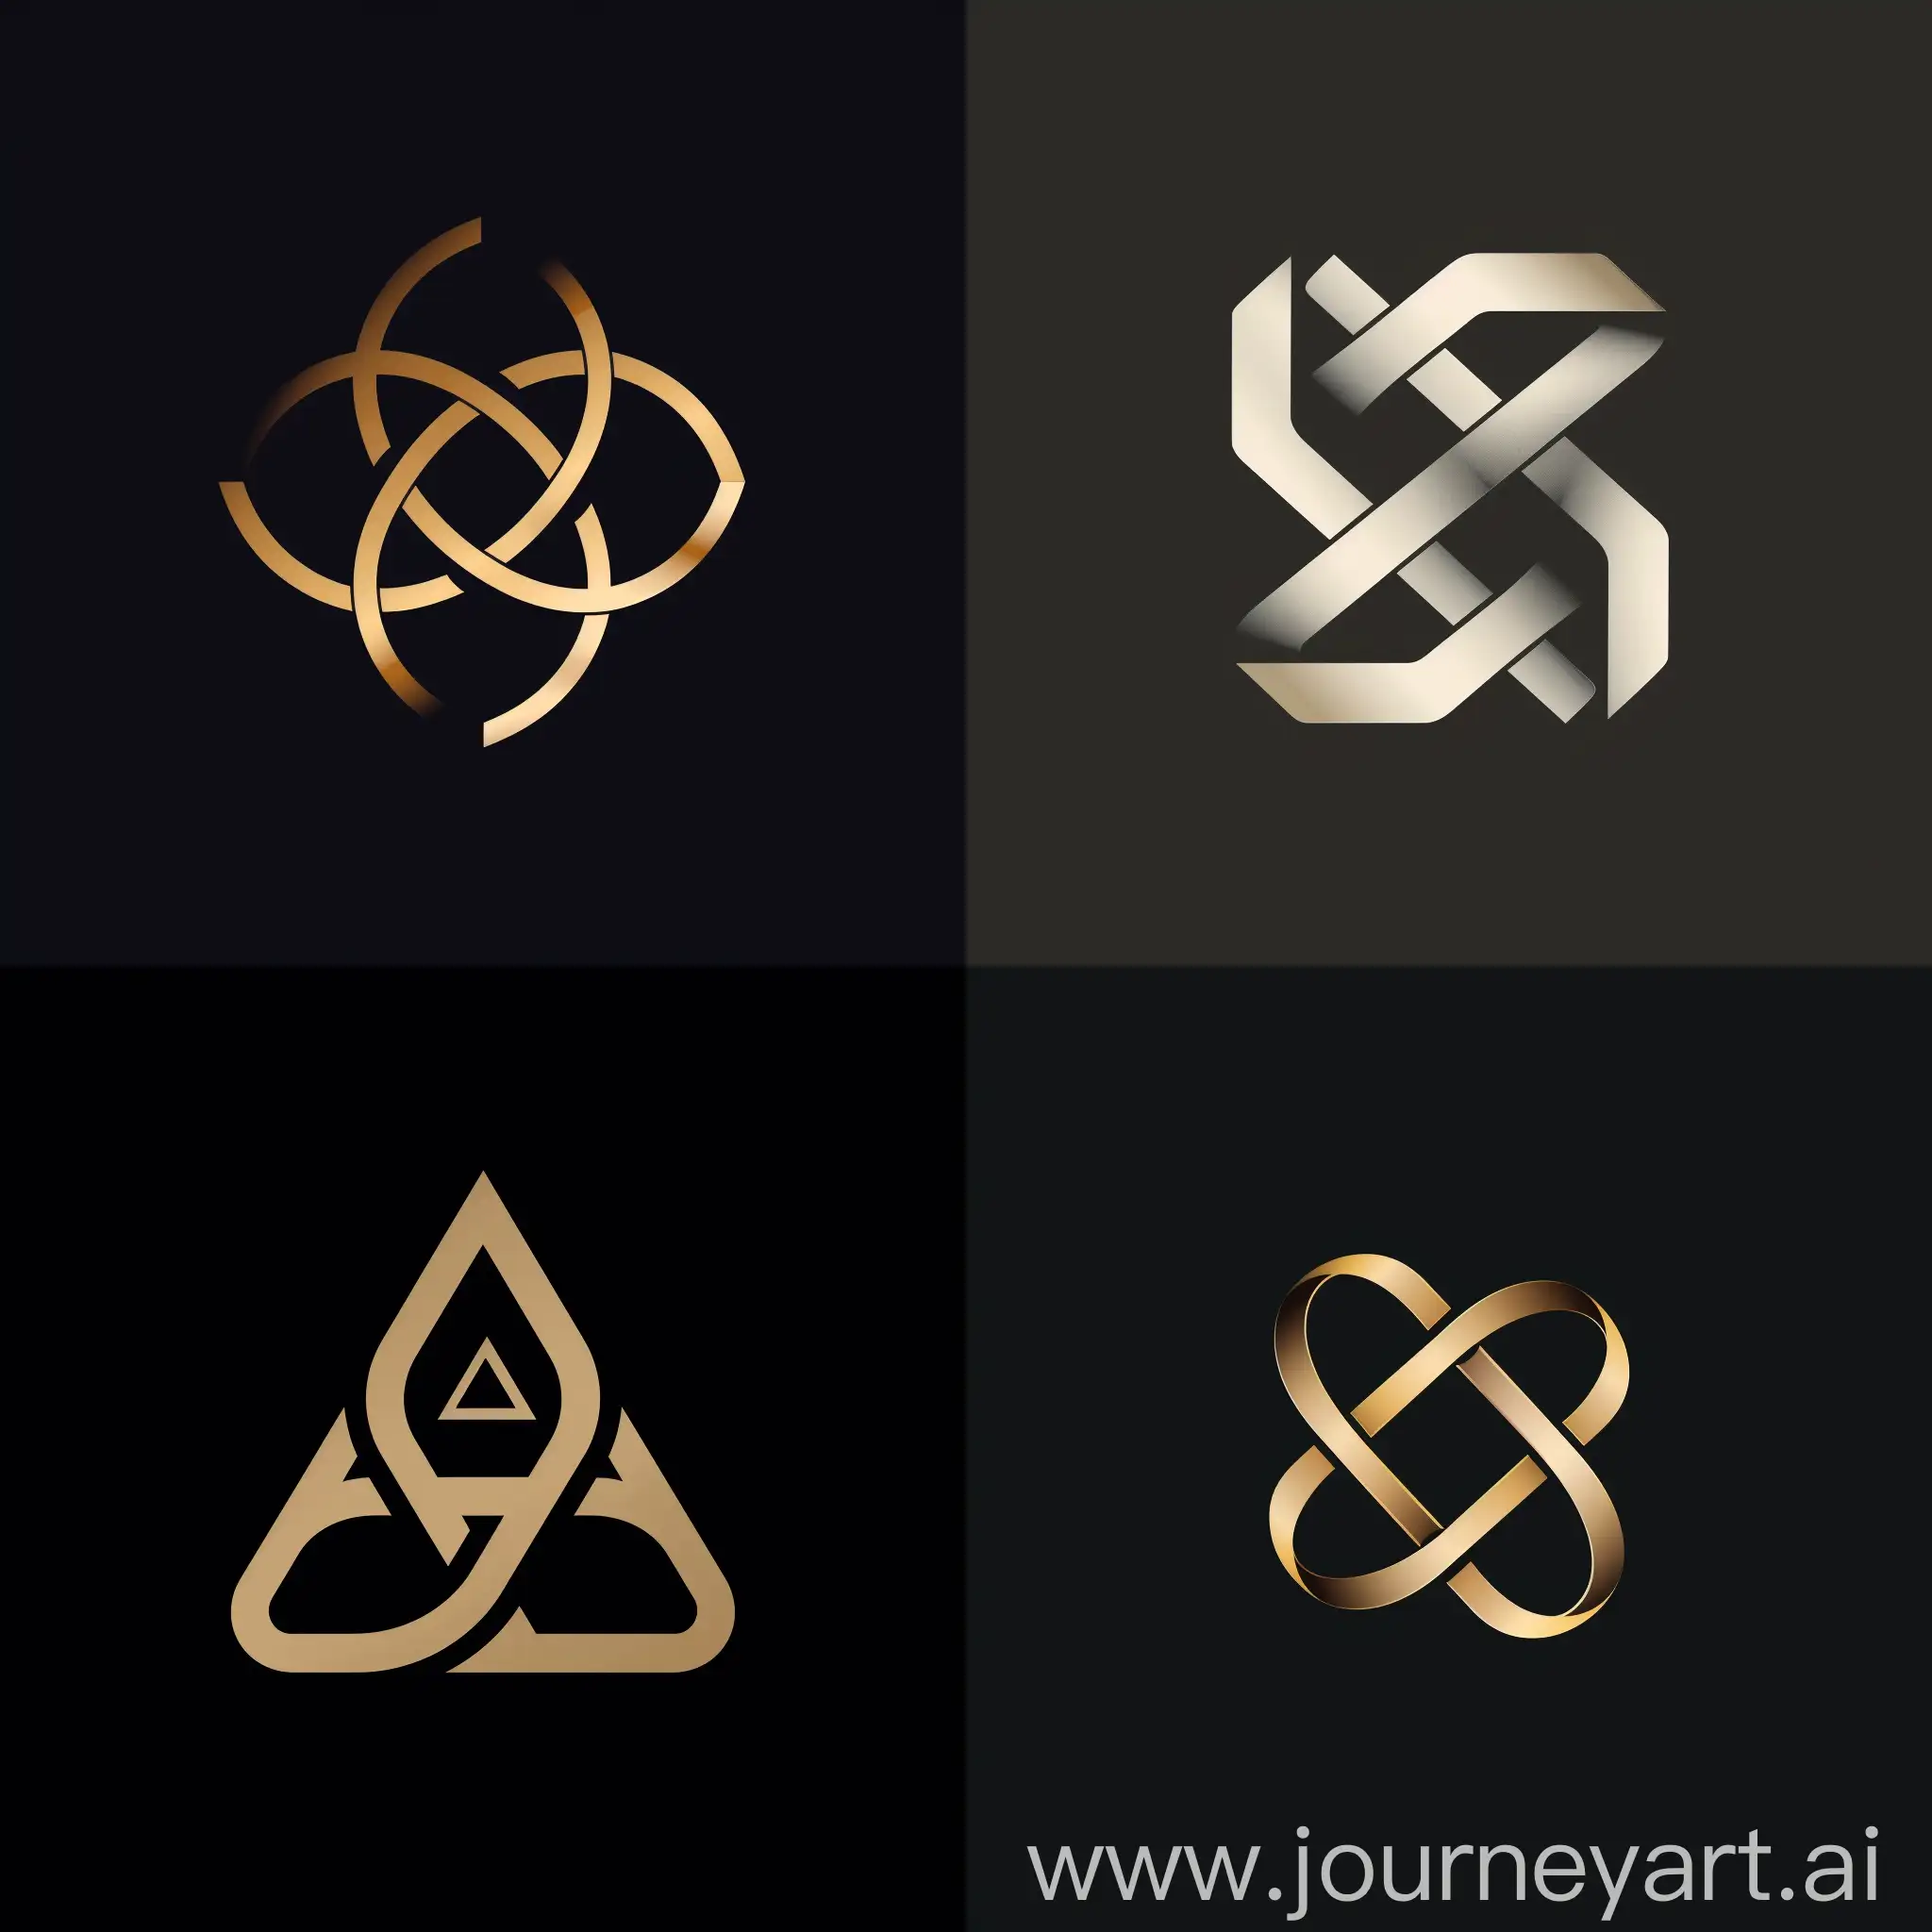 Logo Design requard for IDEA 4 BANGLE